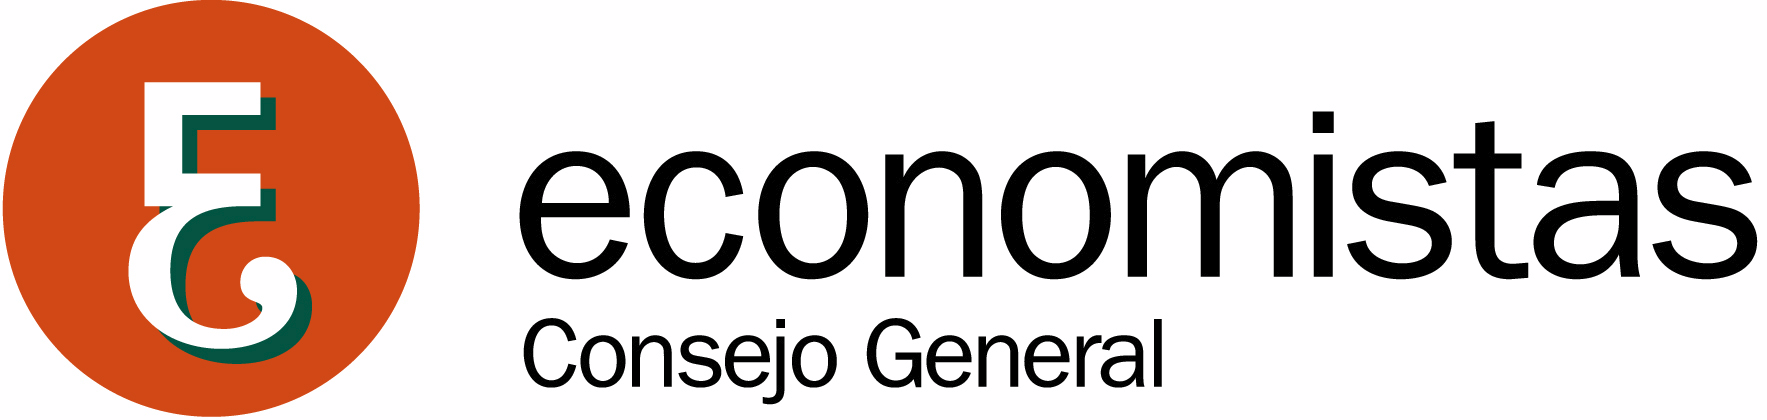 Logo Economistas Consejo General